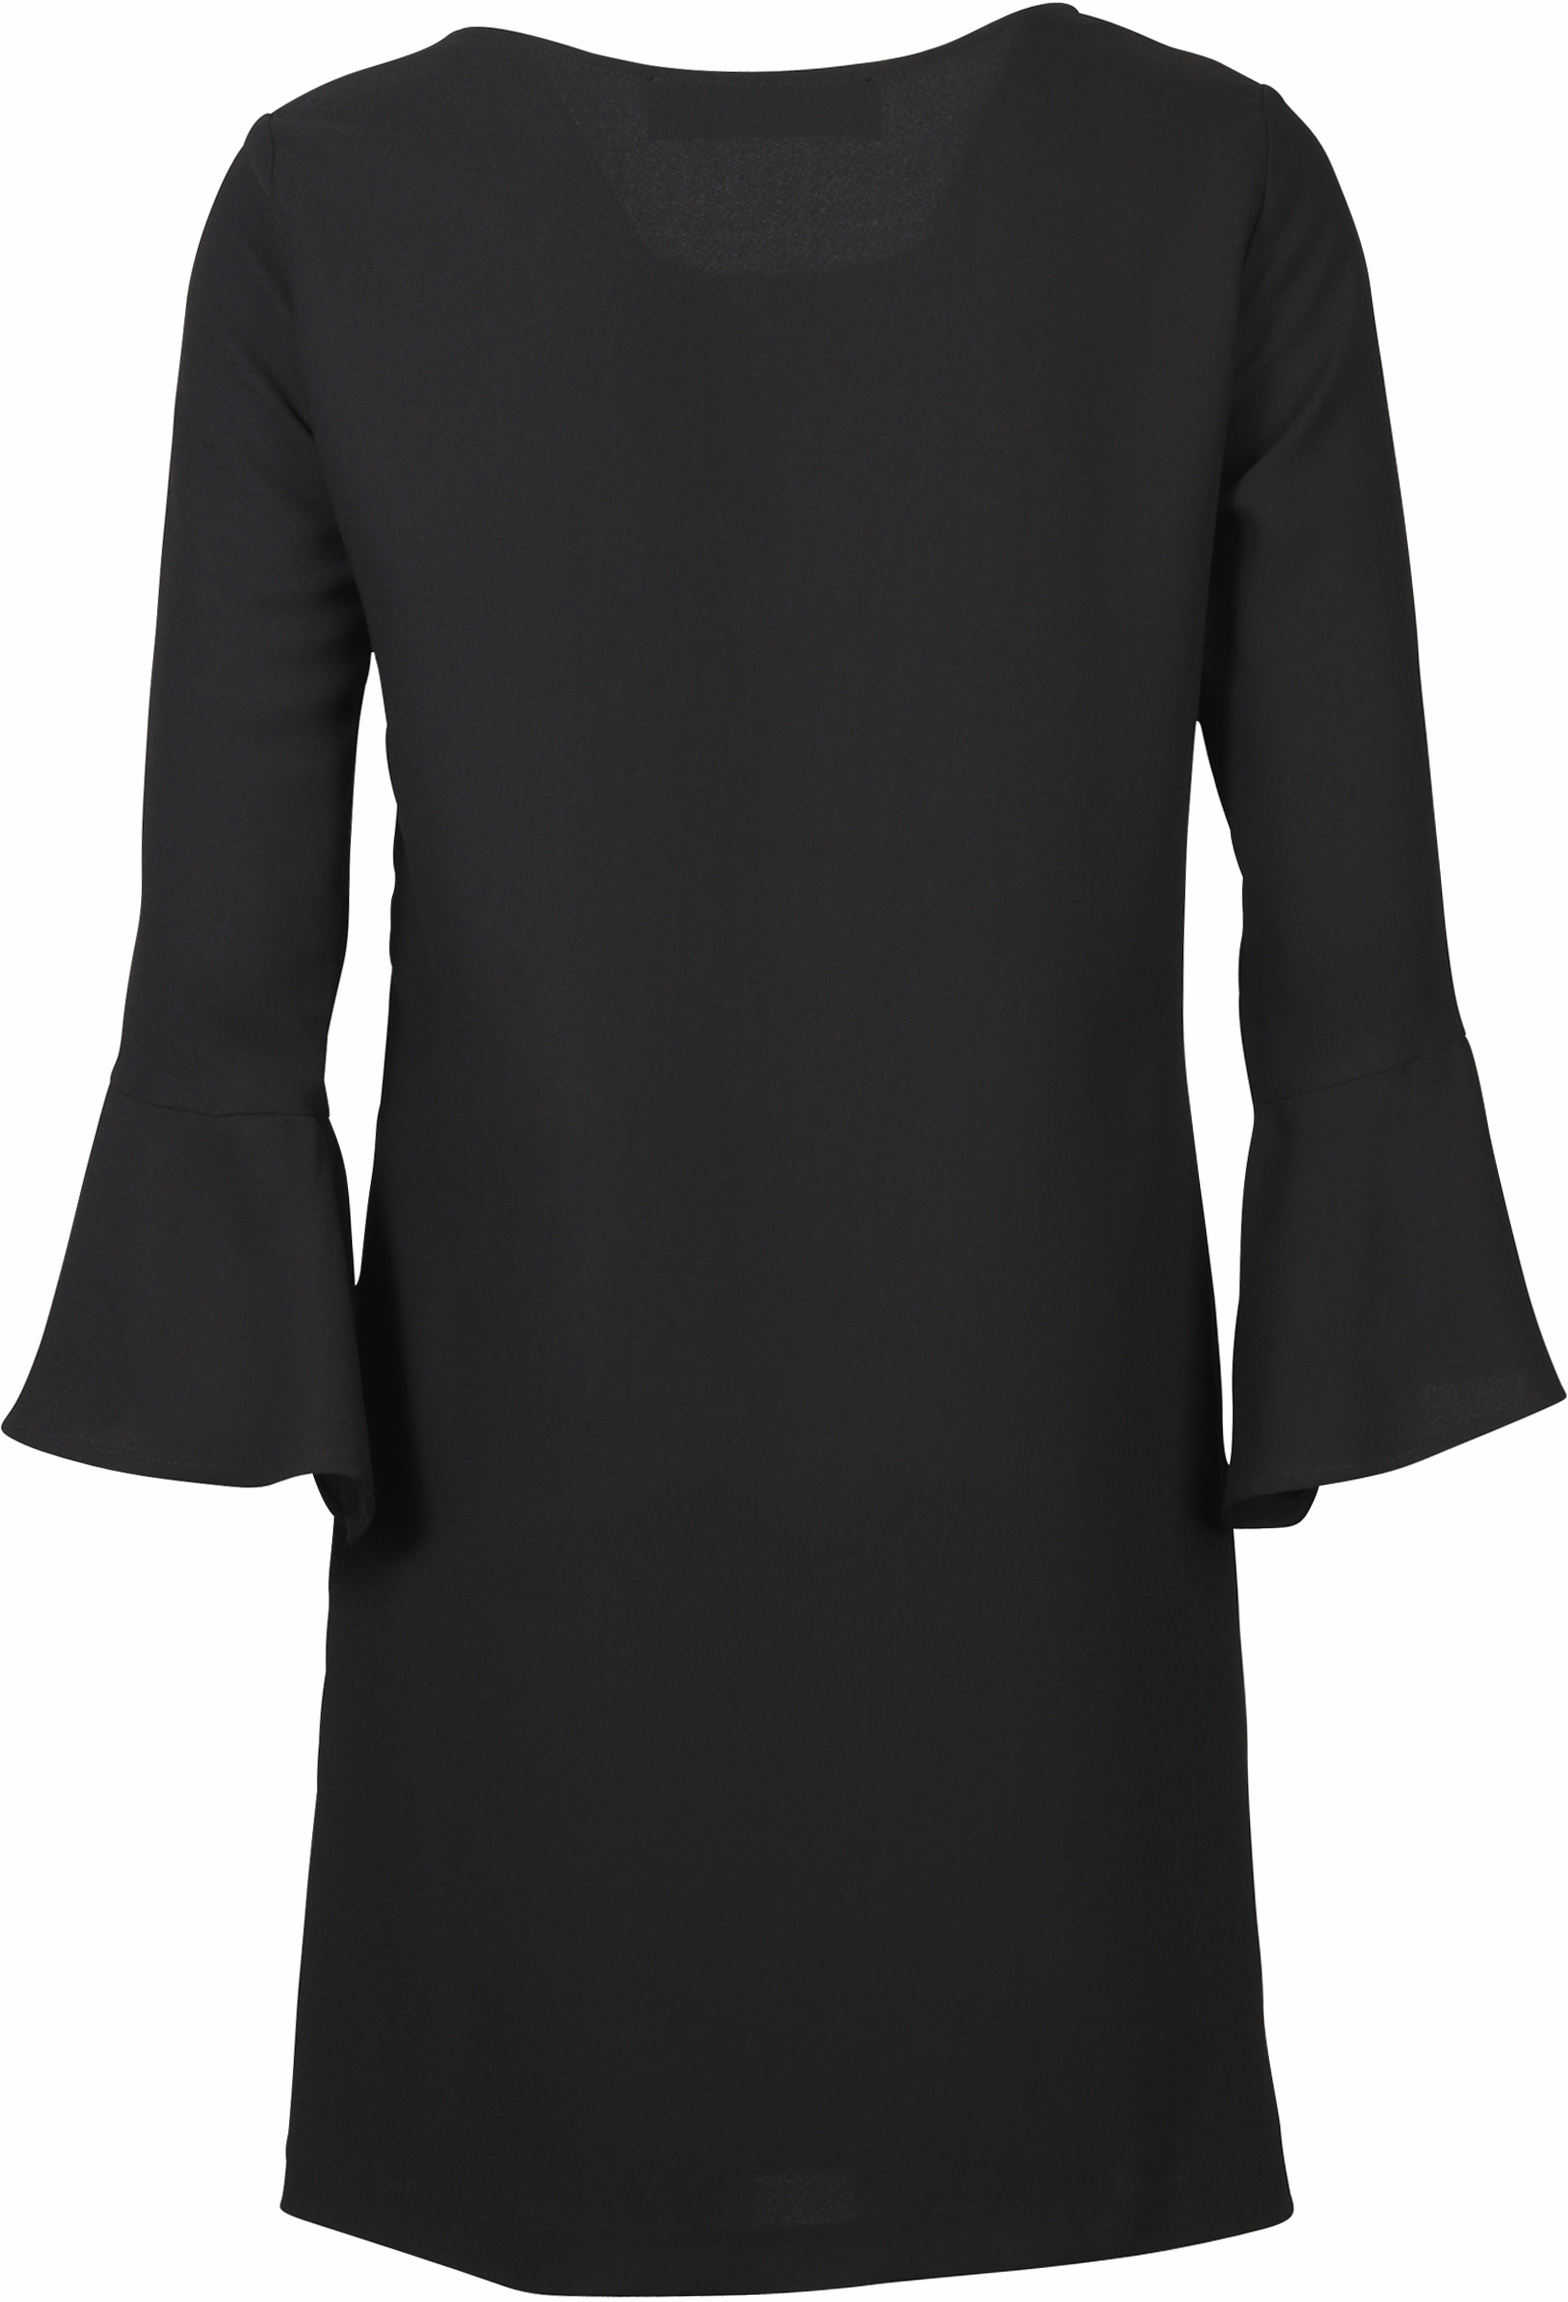 Shirtaporter Kleid Trompetenärmel schwarz